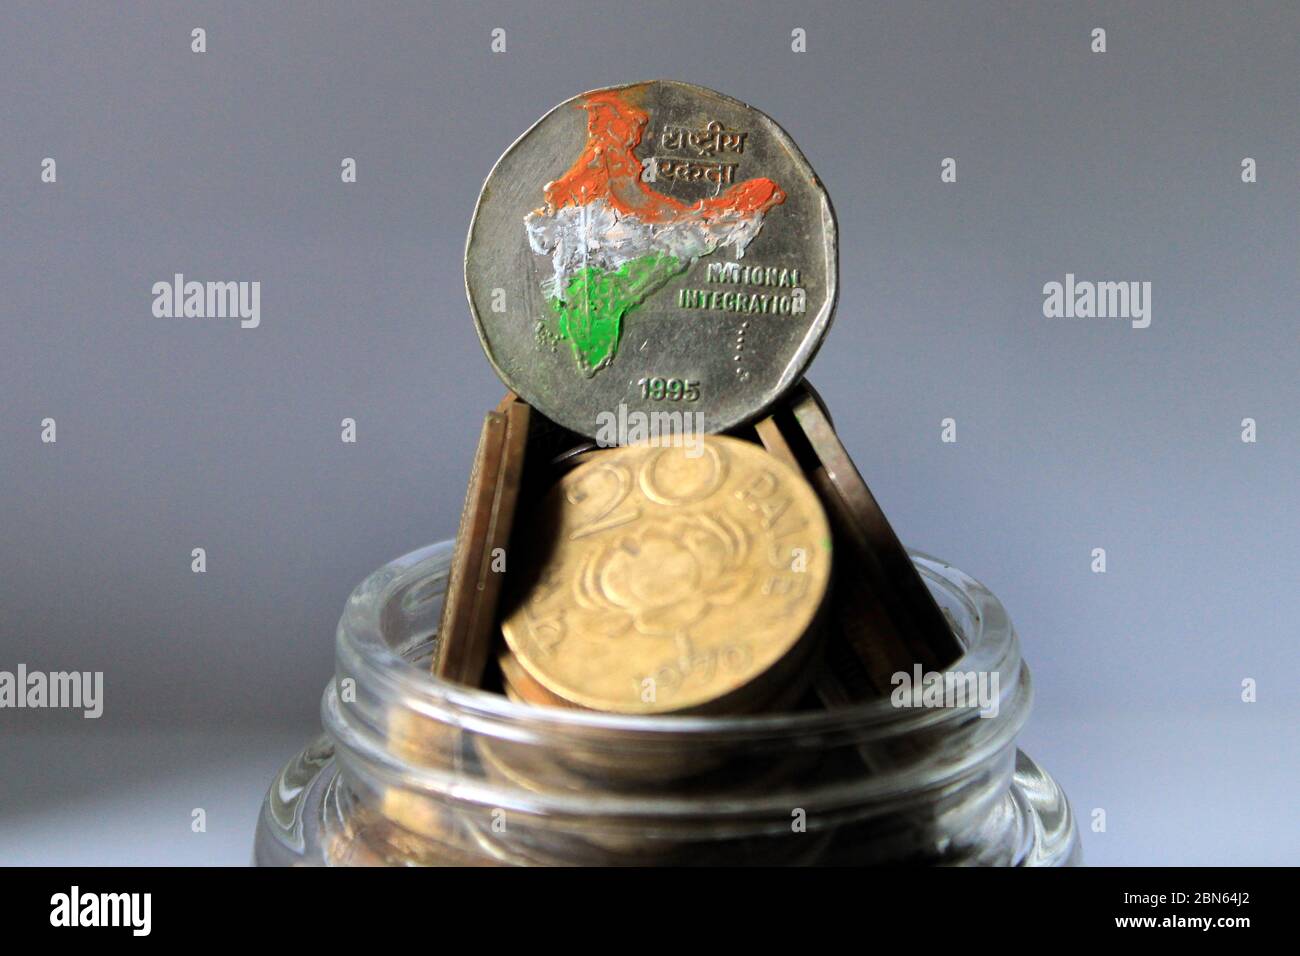 Deux roupies de l'Inde isolées sur fond blanc. Carte de l'Inde comme symbole de l'intégration nationale indienne représentée dans les pièces de monnaie indiennes. Banque D'Images